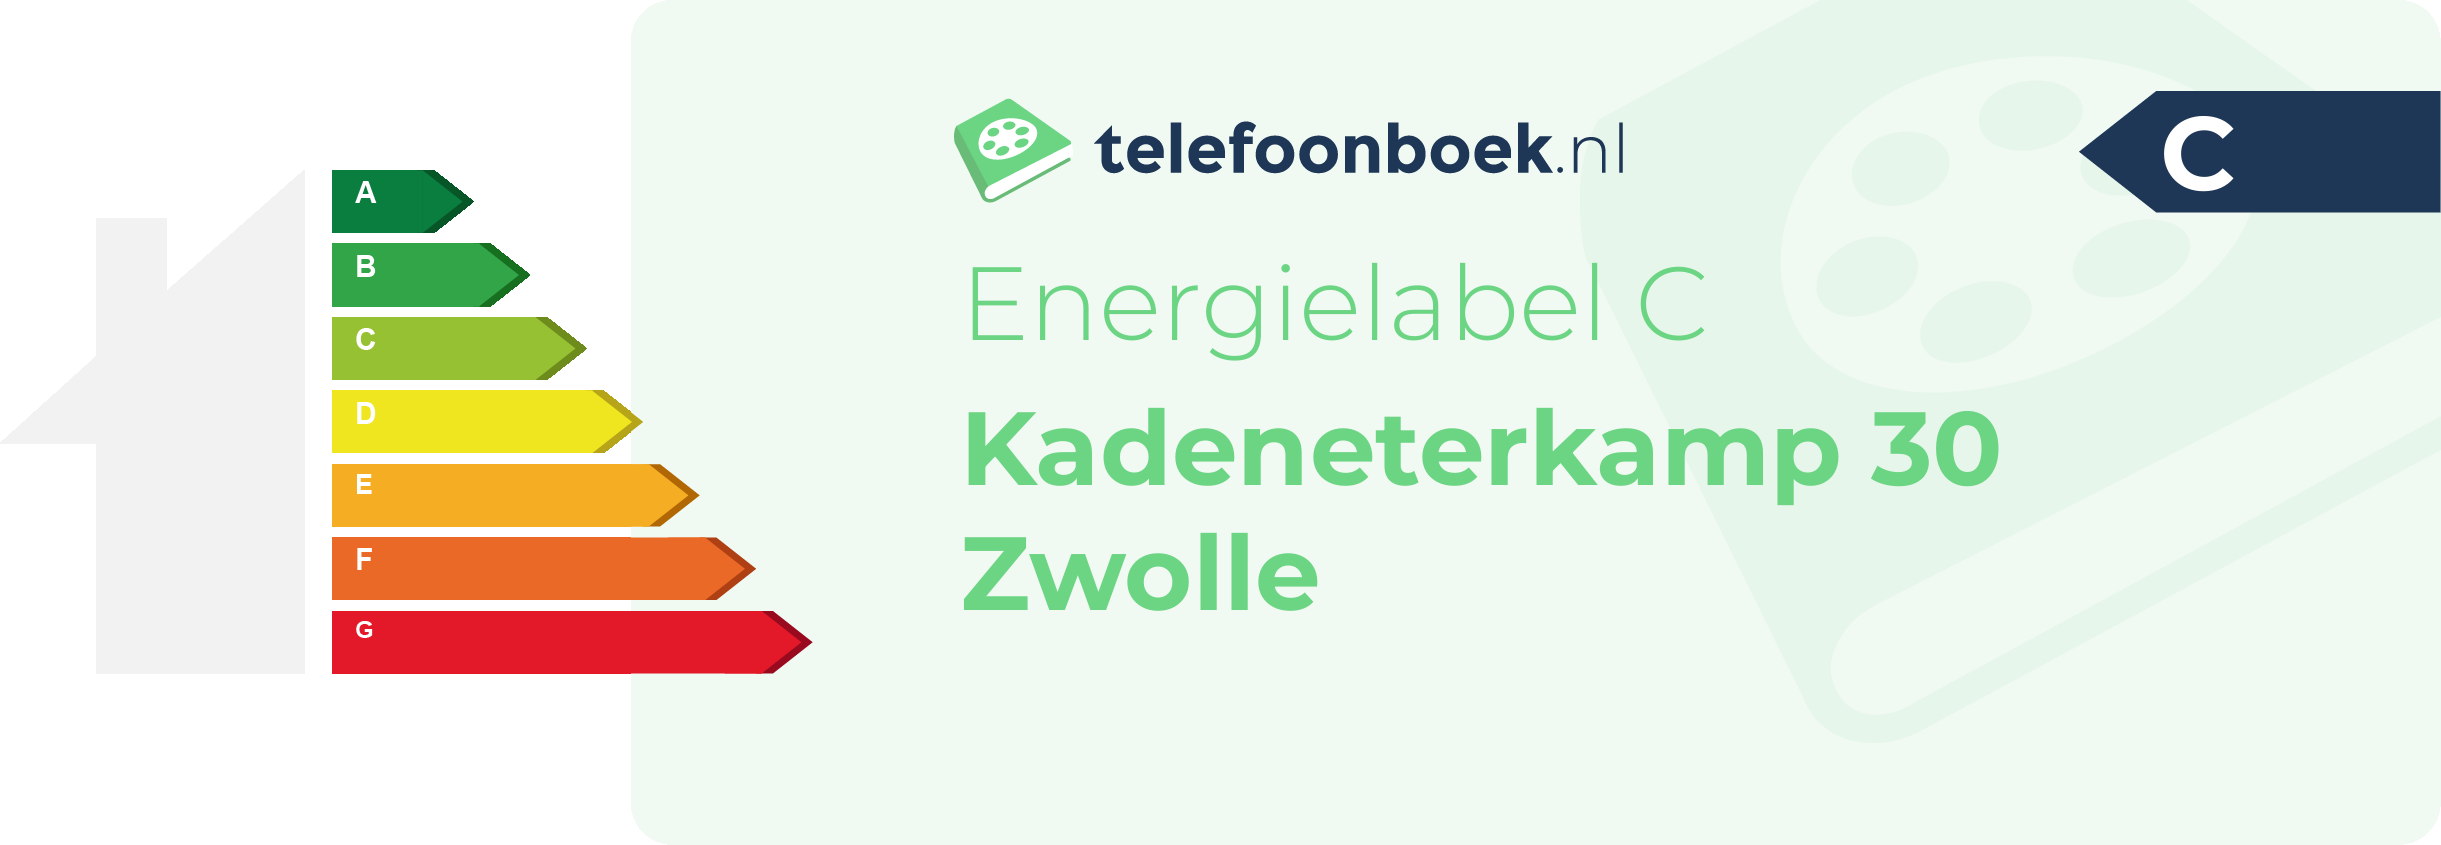 Energielabel Kadeneterkamp 30 Zwolle